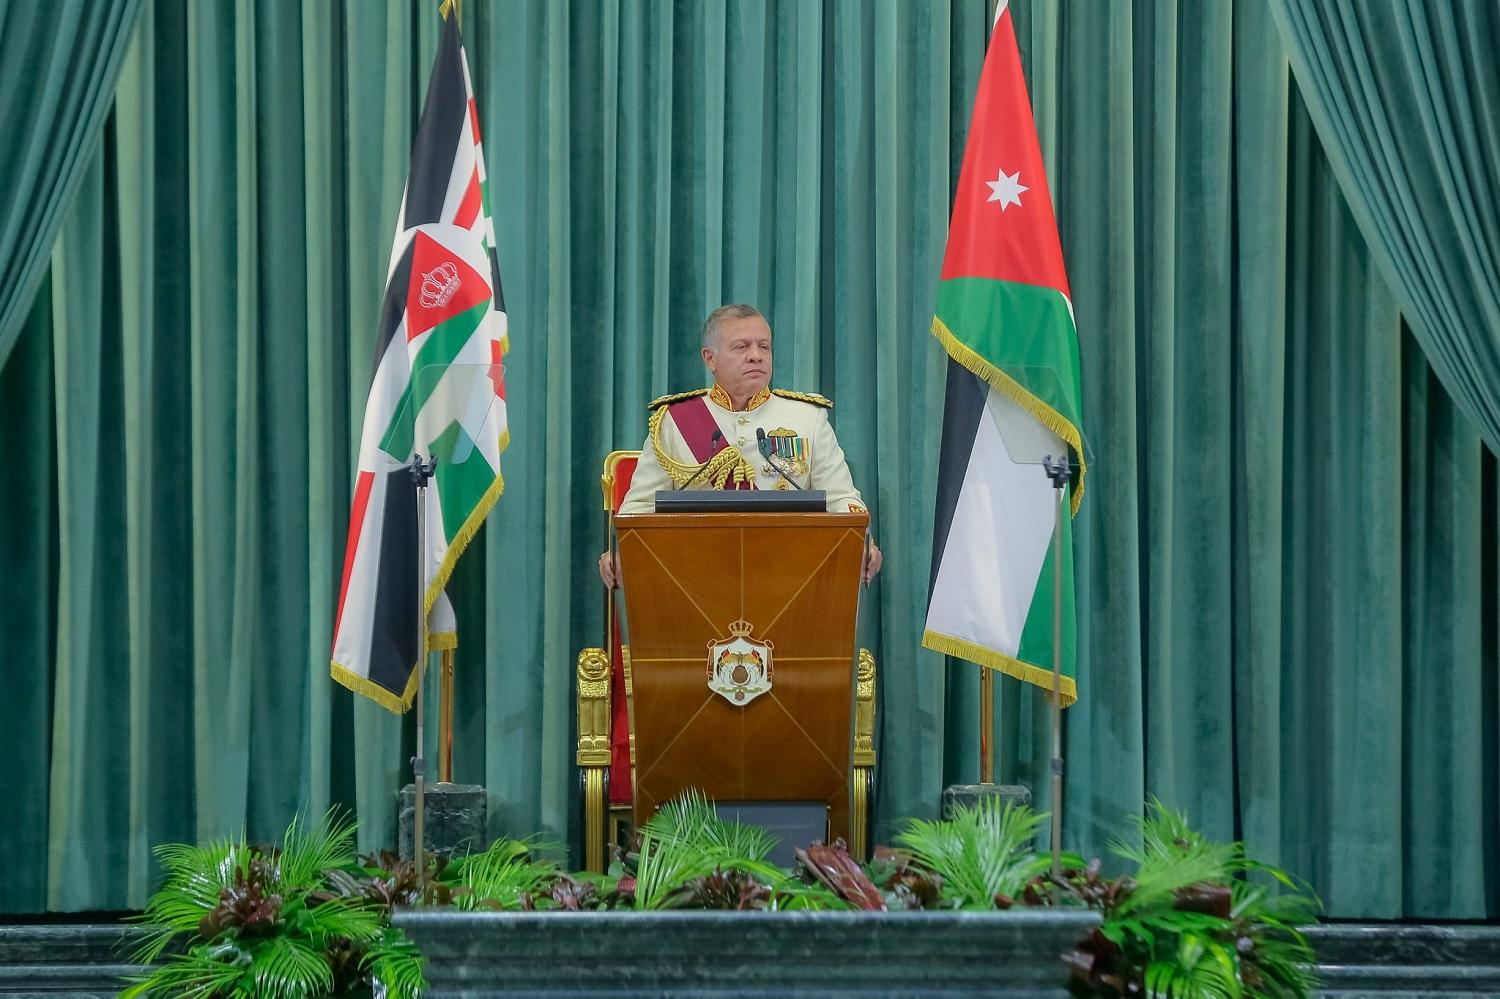 جلالة الملك عبدالله الثاني خلال إلقائه خطاب العرش في افتتاح أعمال الدورة العادية الثالثة لمجلس الأمة الثامن عشر، 14 أكتوبر 2018. (الديوان الملكي الهاشمي)  